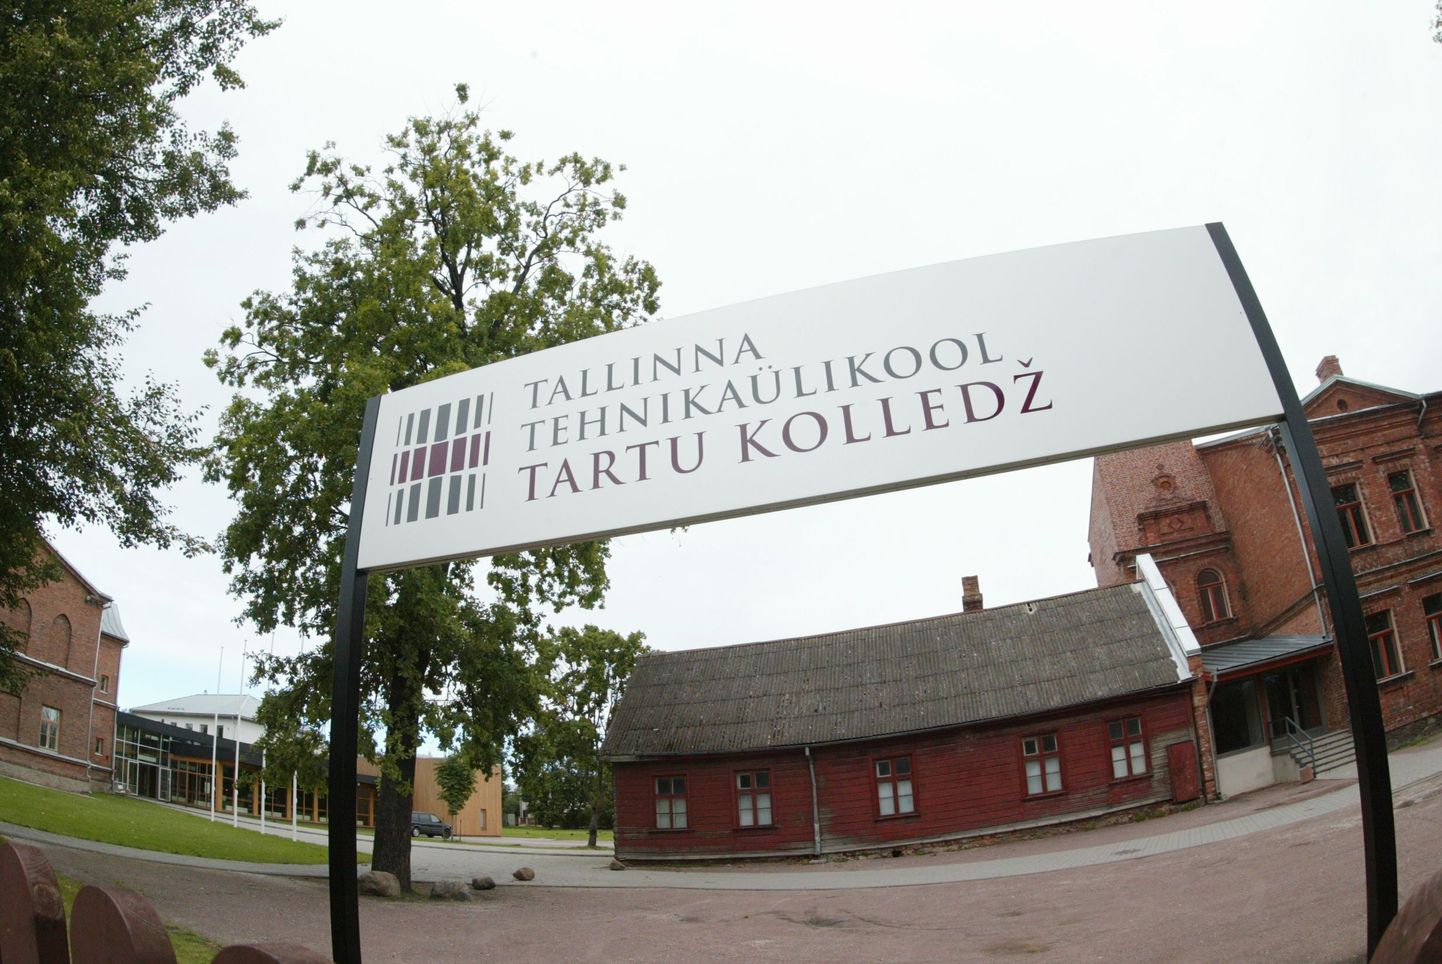 Tallinna Tehnikaülikooli Tartu Kolledž.